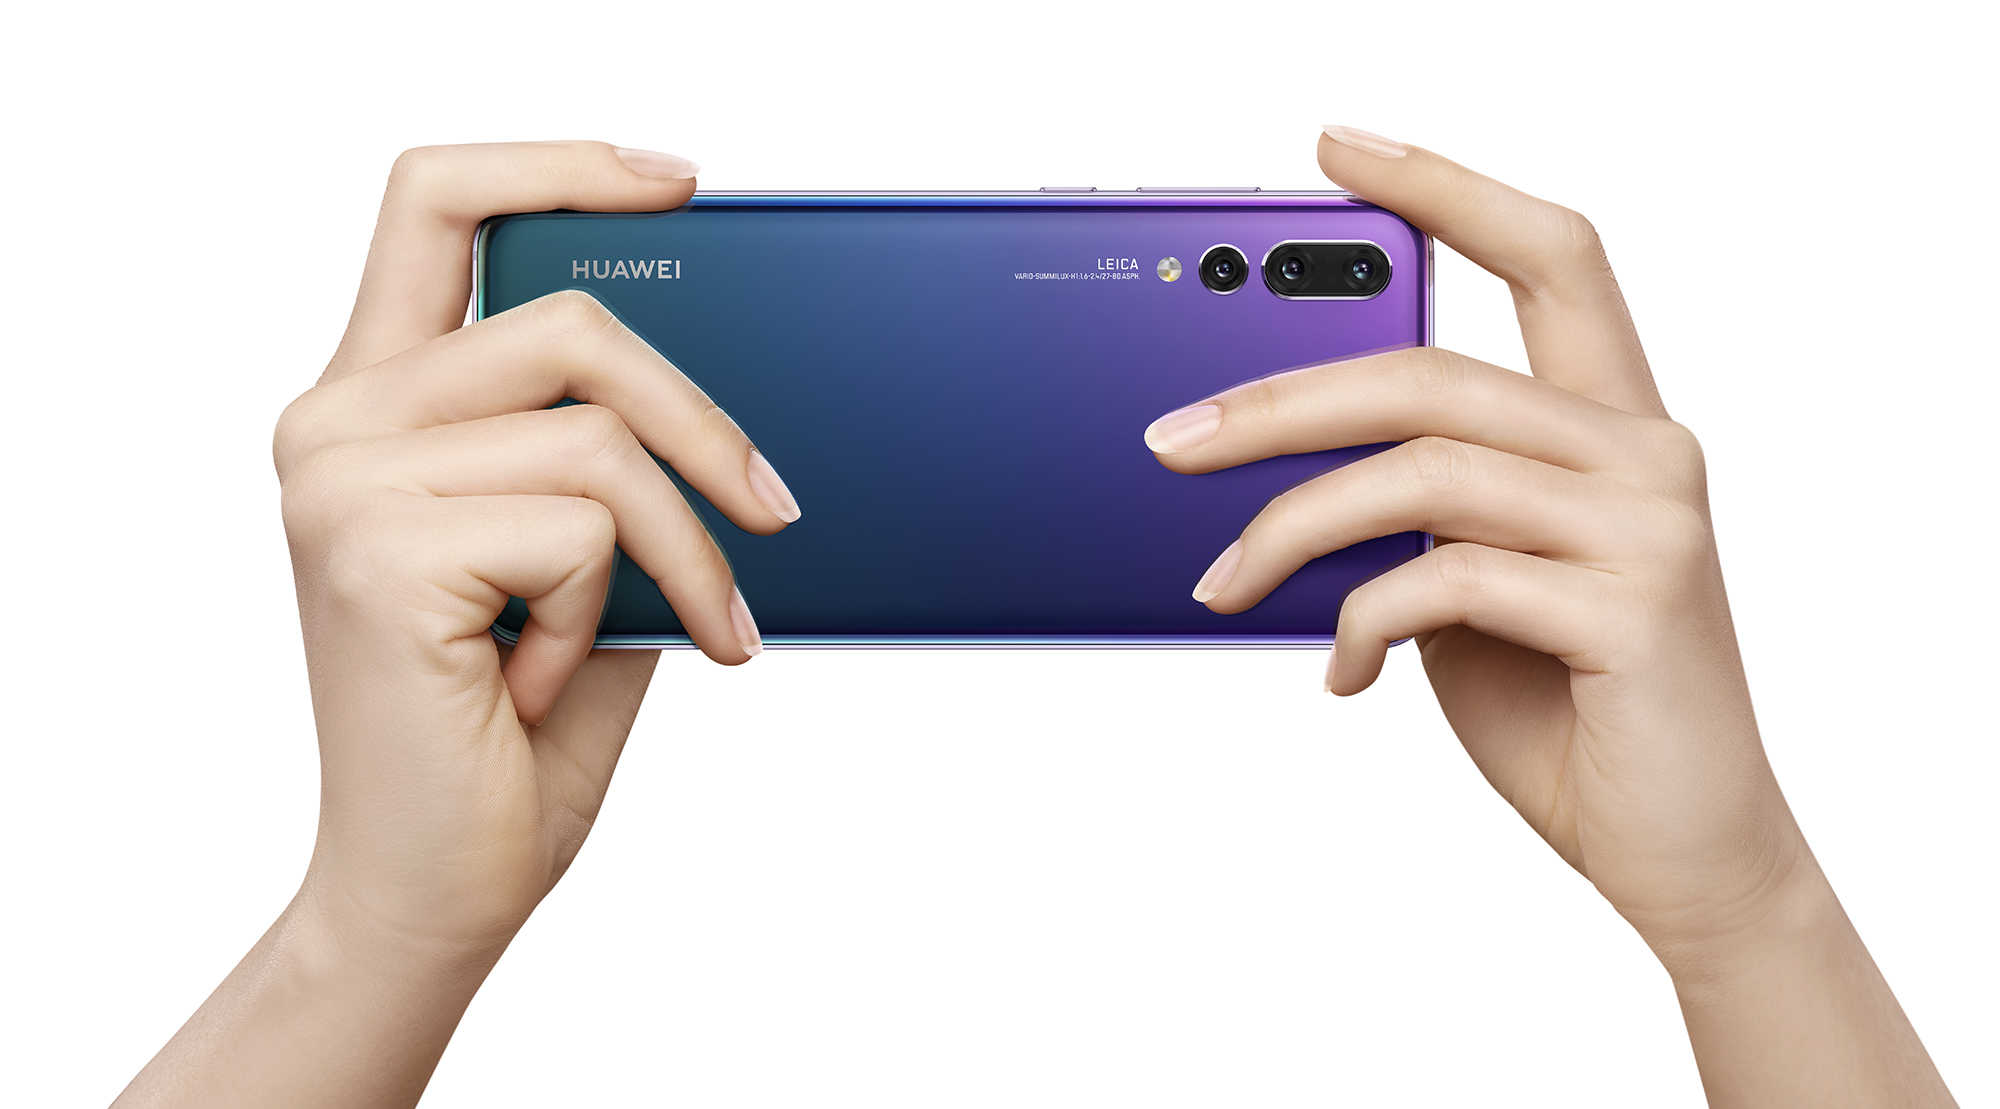 El buque insignia de 2018, Huawei P20 Pro, recibe una importante actualización de EMUI 10.0.0.193 con nuevas características a nivel global